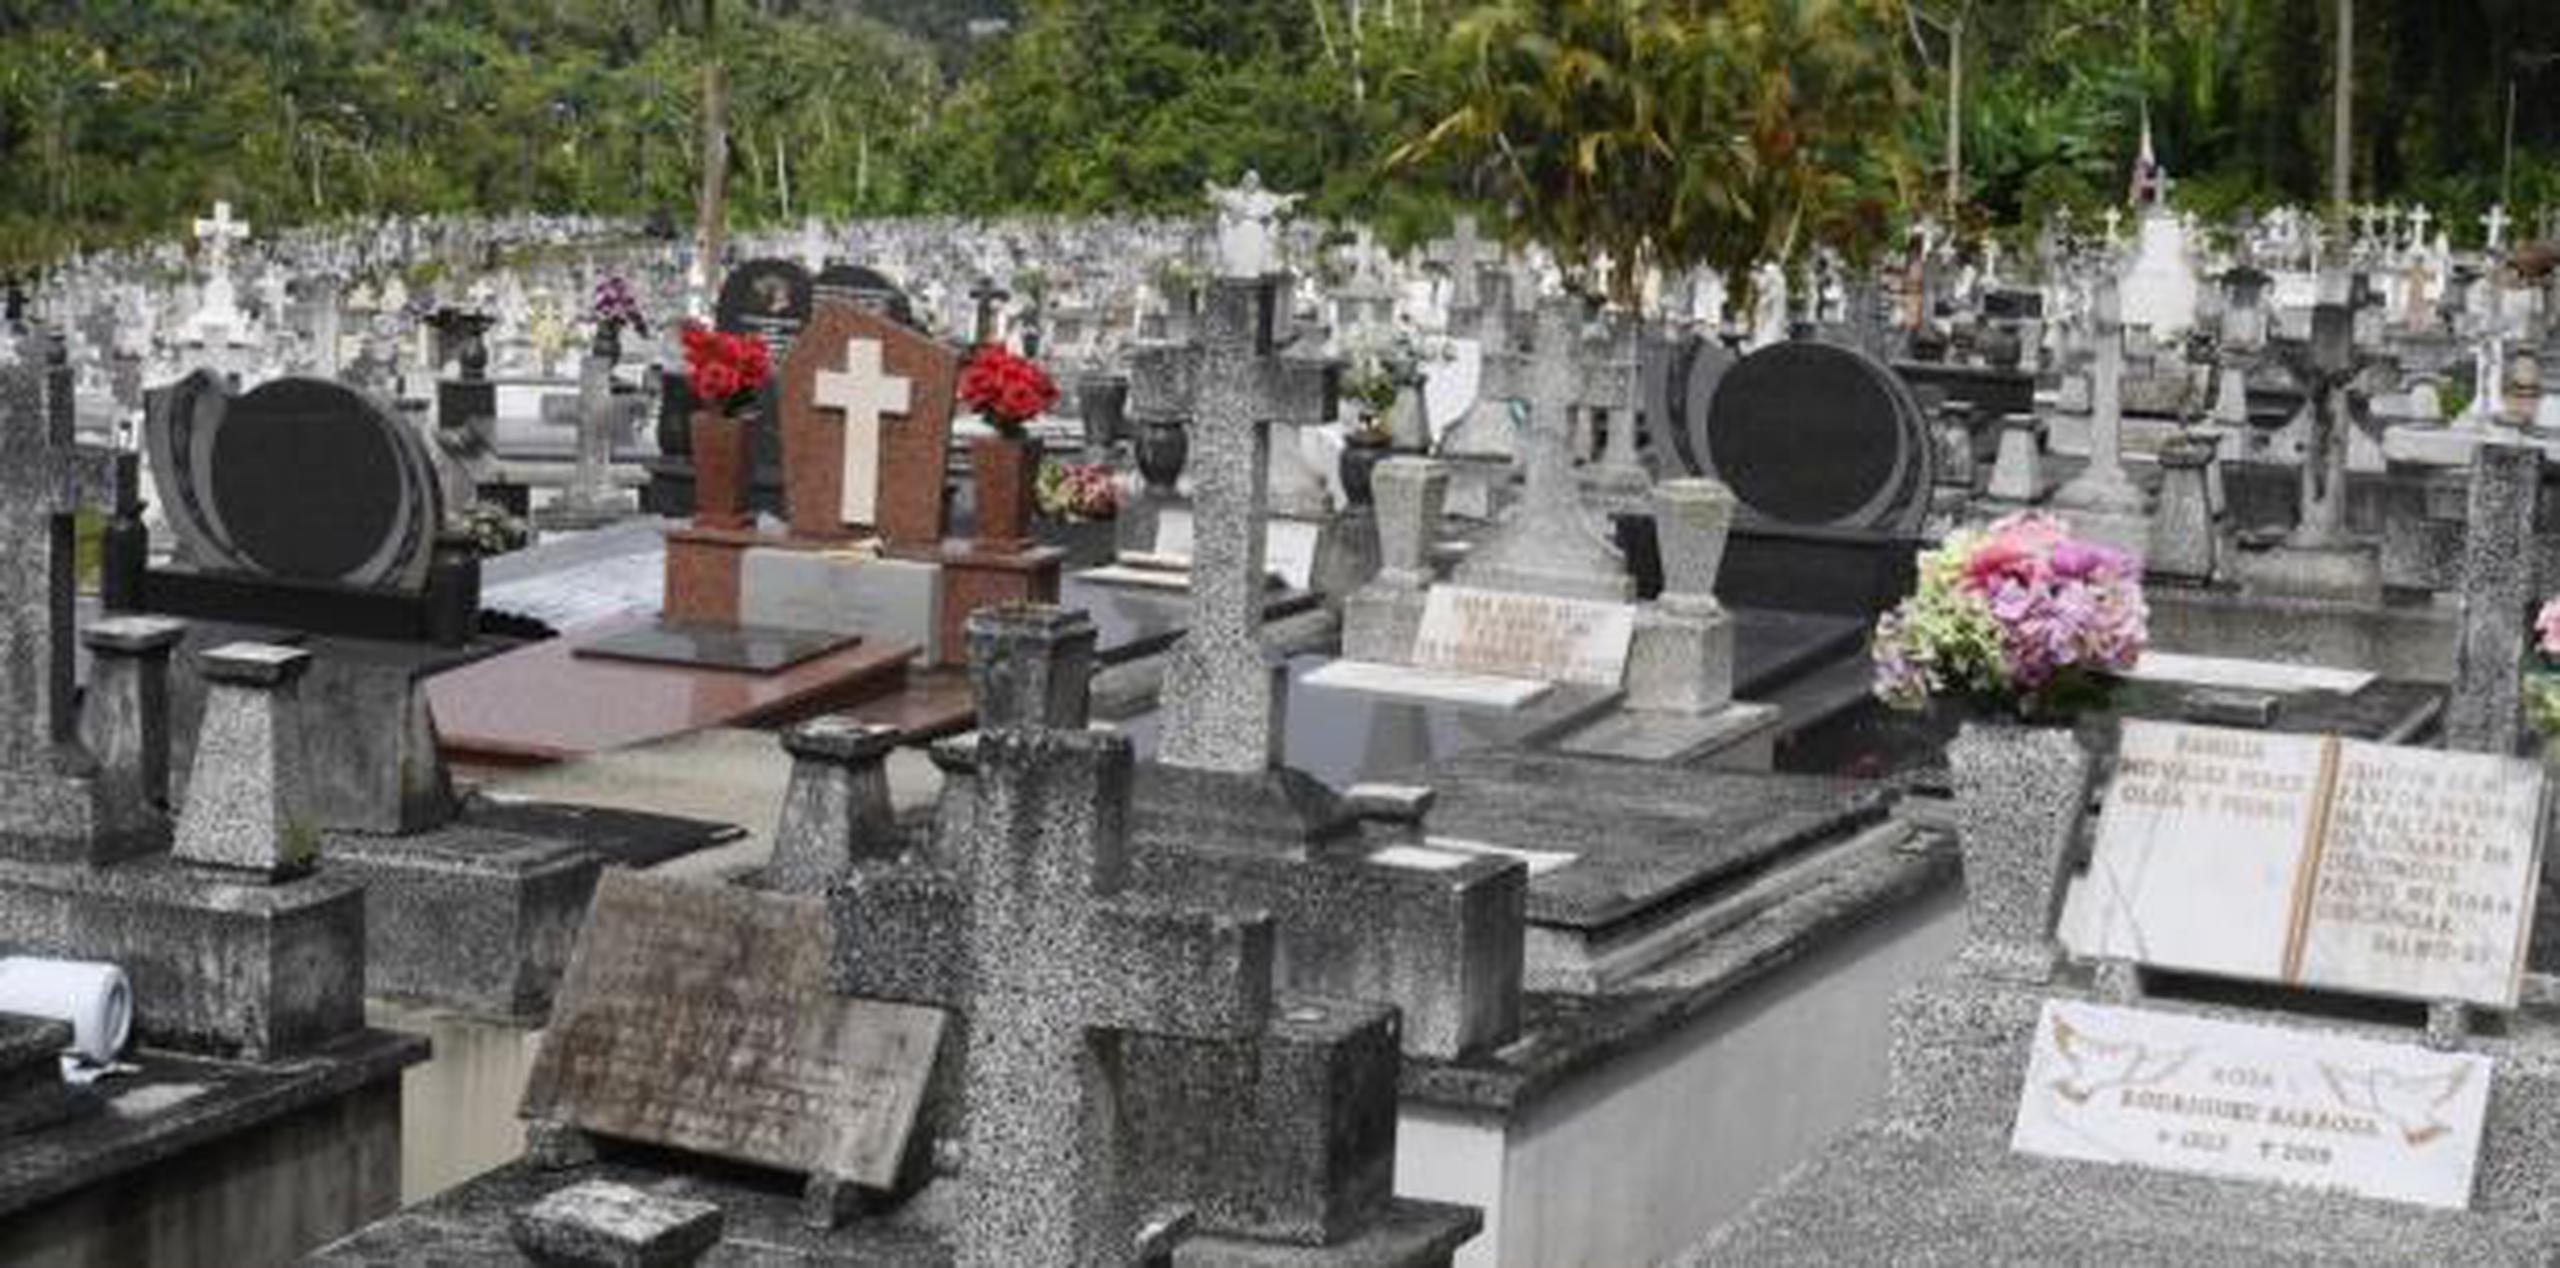 Otros planes del municipio son establecer un nuevo cementerio en el barrio Espino.  (luis.alcaladelolmo@gfrmedia.com)